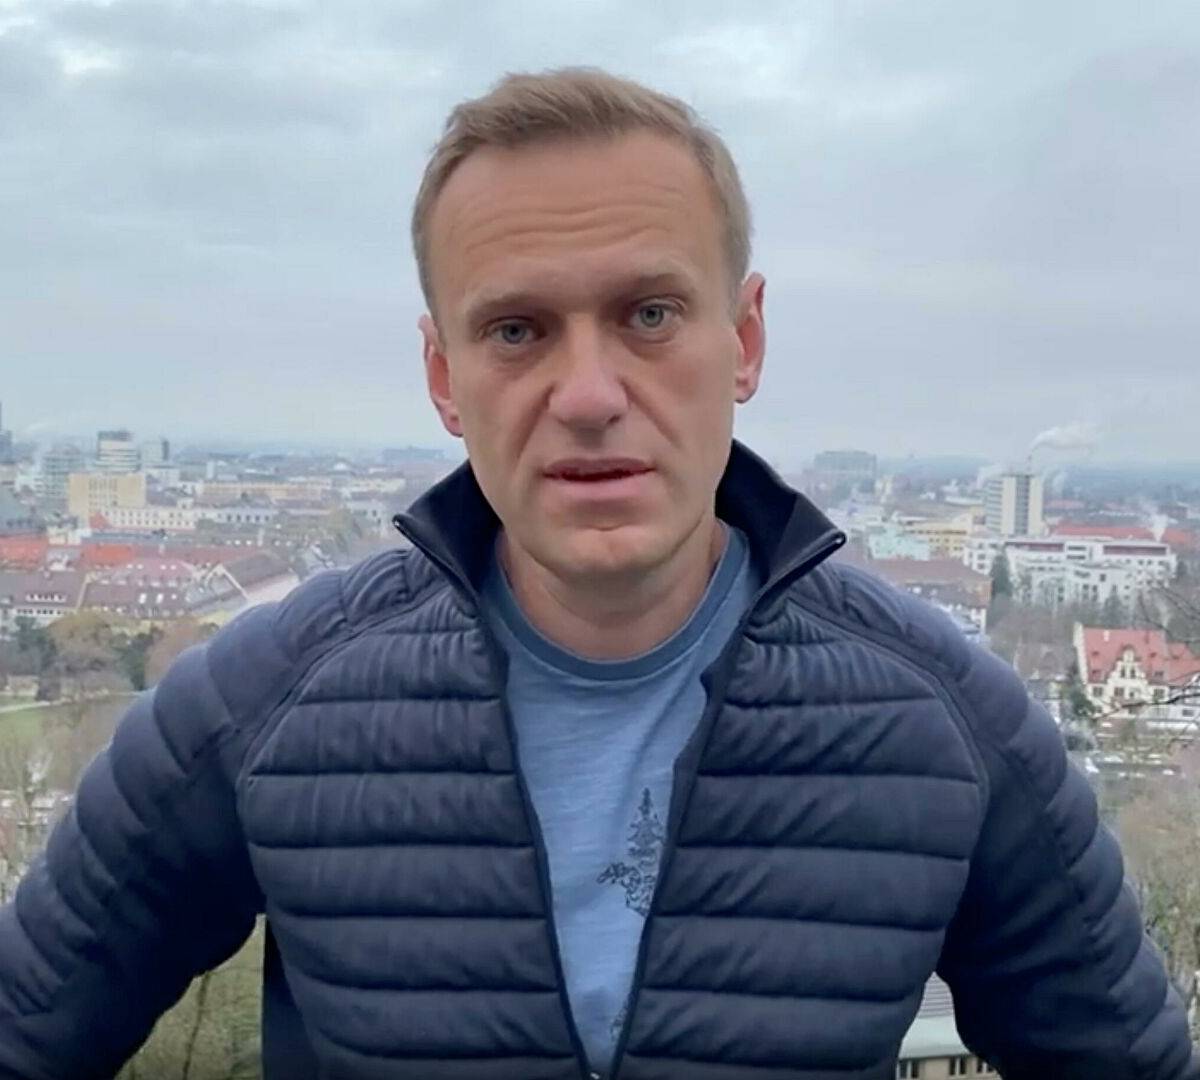 Запад использует Навального: зарубежные СМИ о вмешательстве в дела РФ